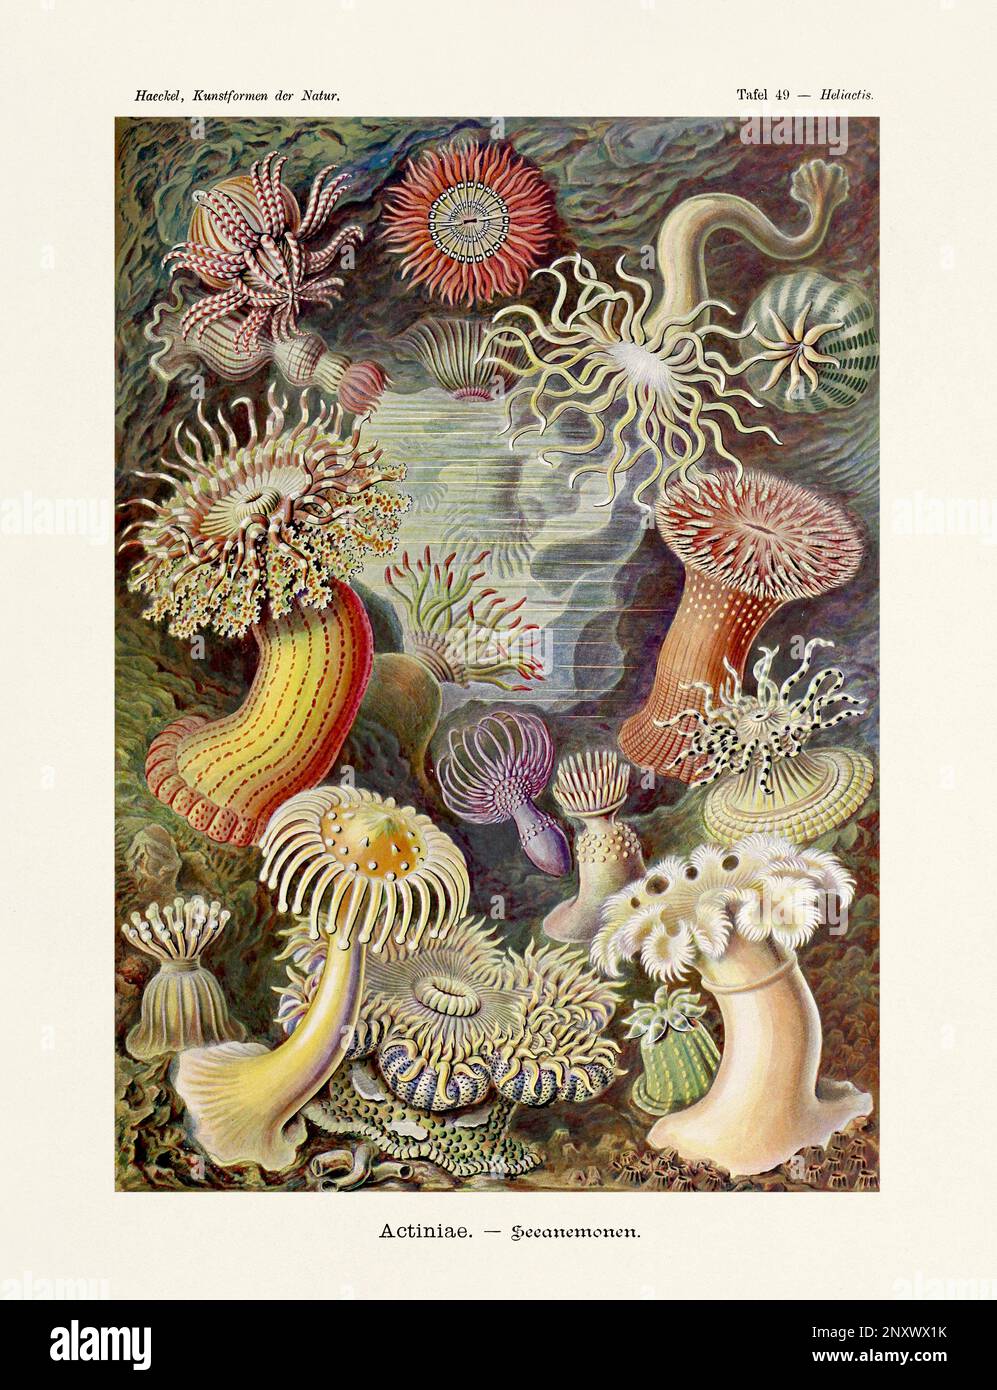 ERNST HAECKEL ART - Aktinien, Seeanemonen - 19. Jahrhundert - Antike zoologische Illustration - Illustrationen des Buches : "Kunstformen in der Natur" Stockfoto